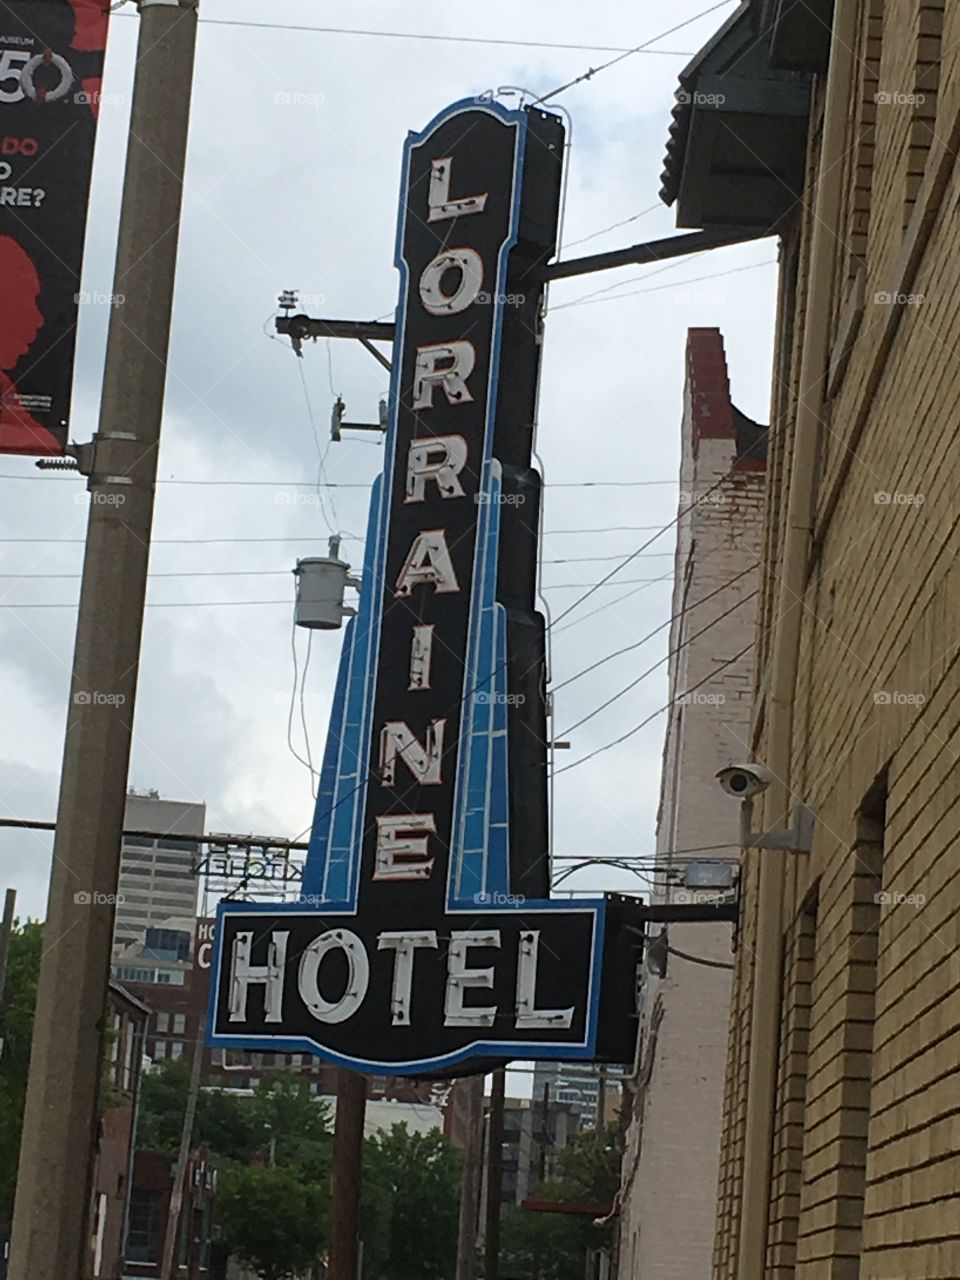 Lorraine Hotel sign - Memphis